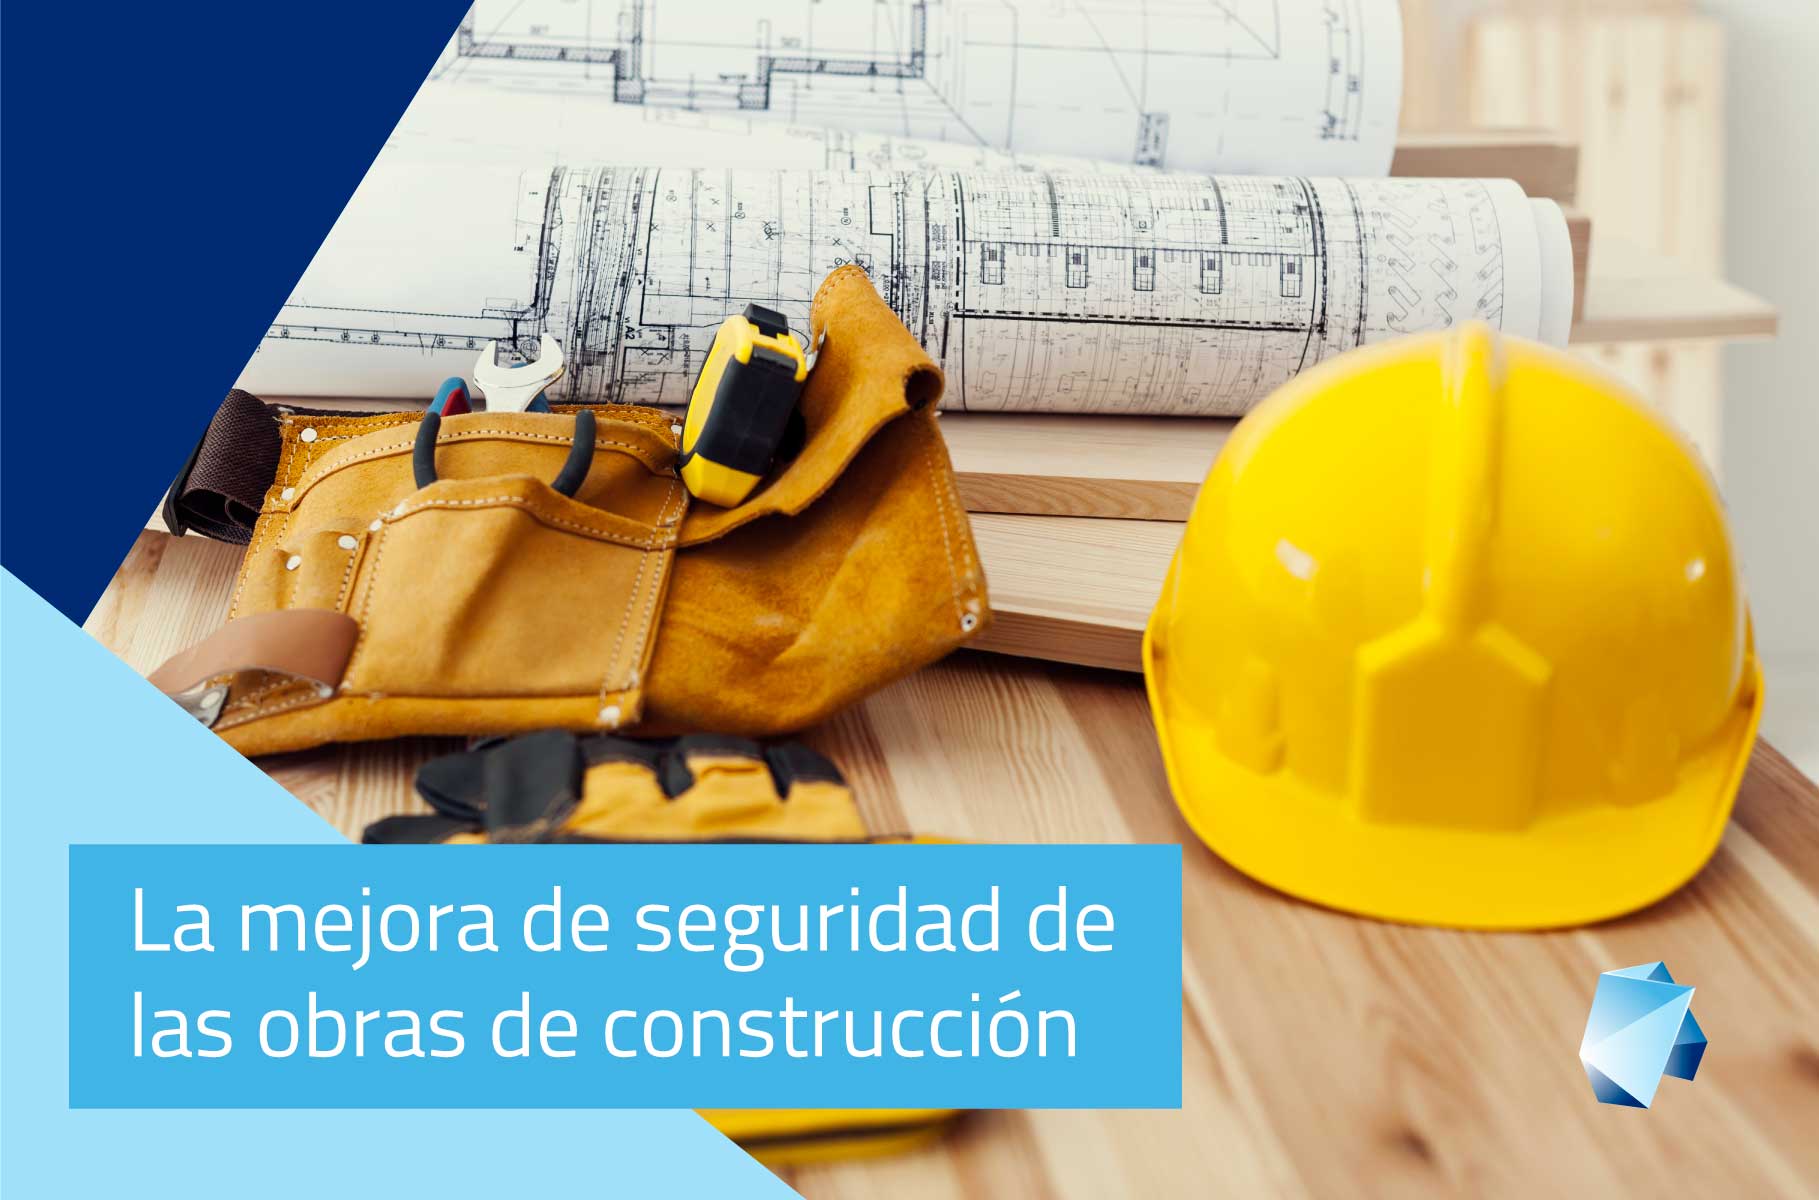 La mejora de la seguridad de las obras de construcción gracias a la tecnología BIM